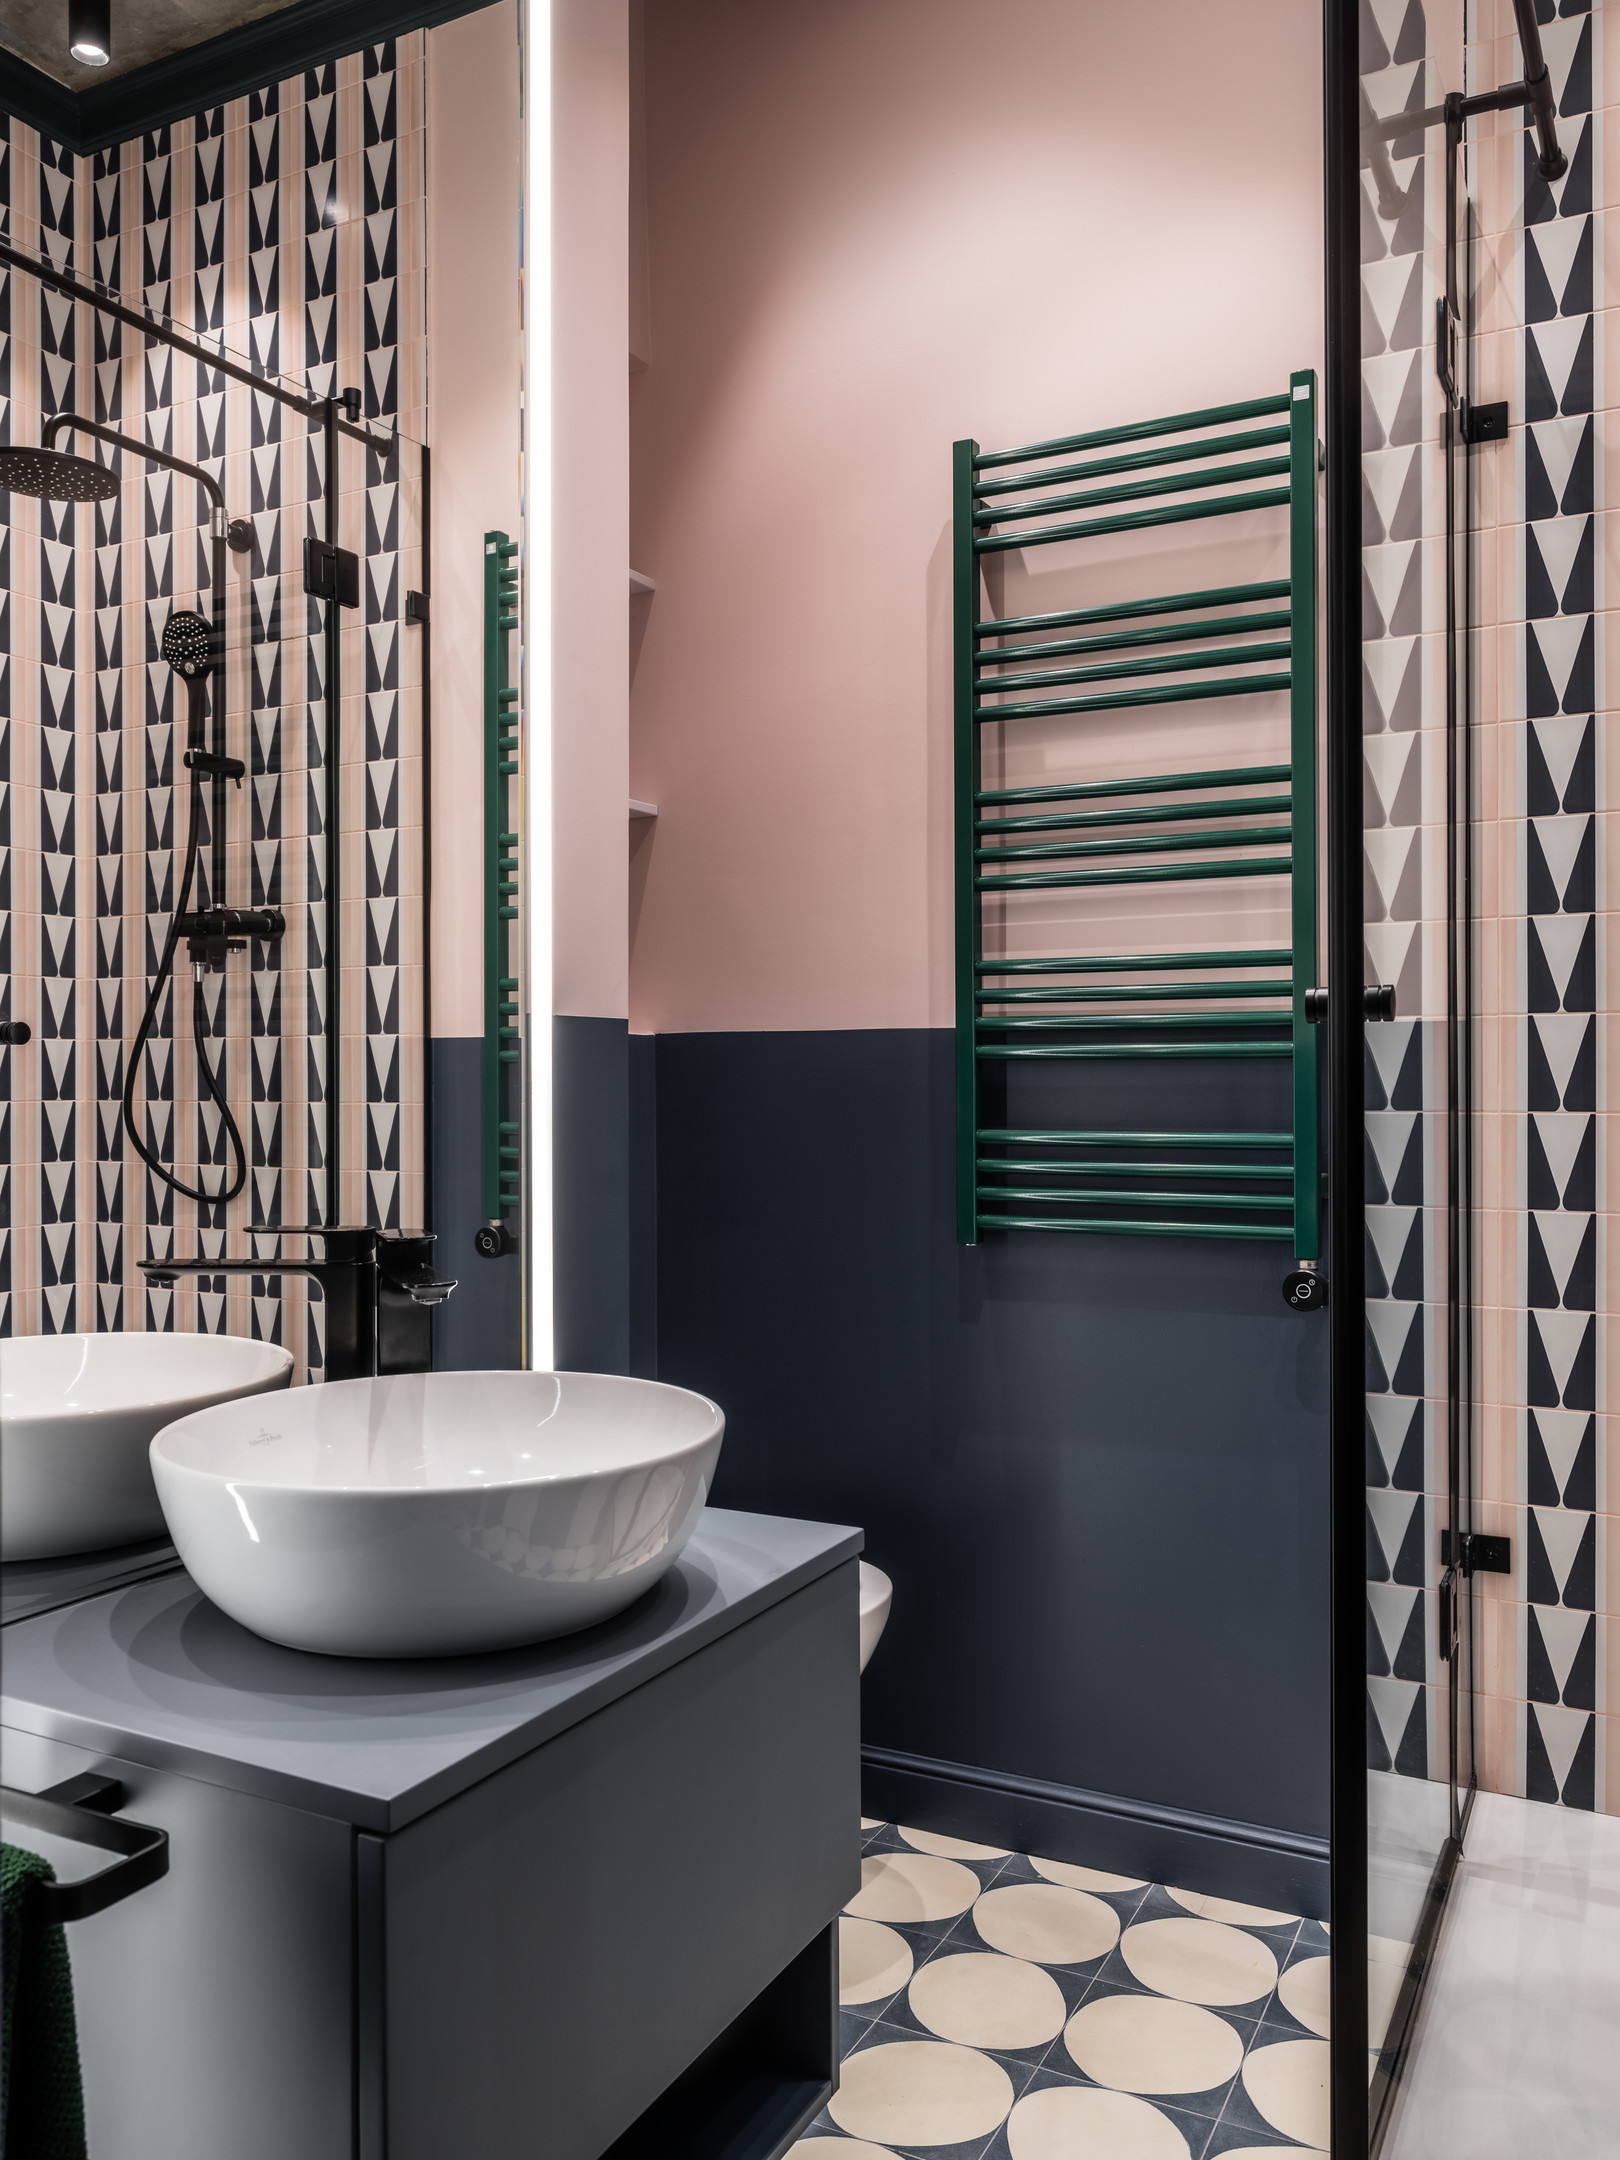 Diện tích phòng tắm chỉ “gói gọn” trong 3m² nhưng có đủ không gian cho mọi thứ bạn cần với tông màu hồng - xám cực kỳ thời trang.